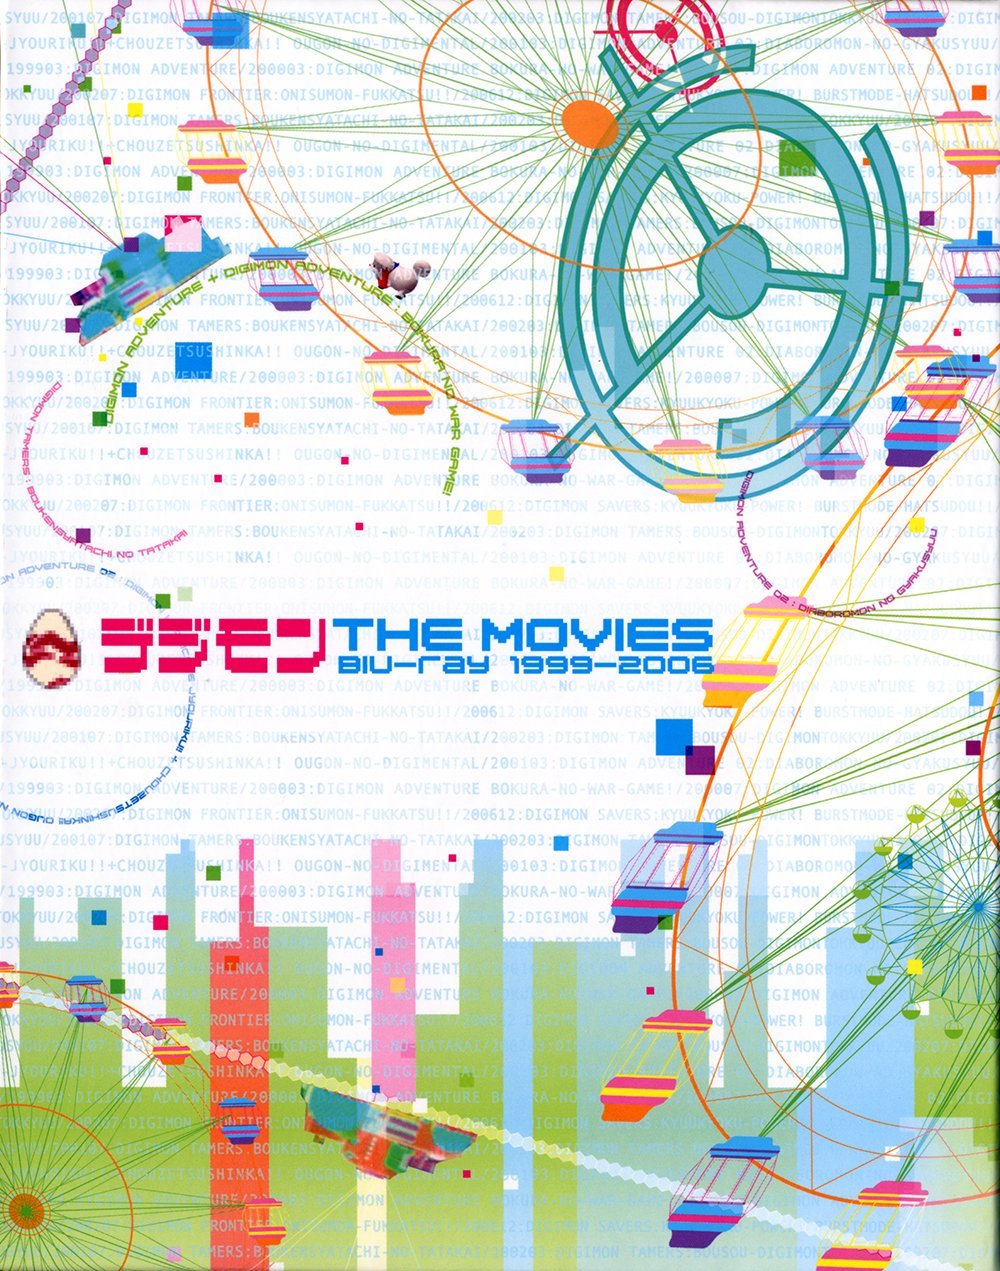 デジモン THE MOVIES Blu-ray 1999-2006 - CD・DVD・ブルーレイ